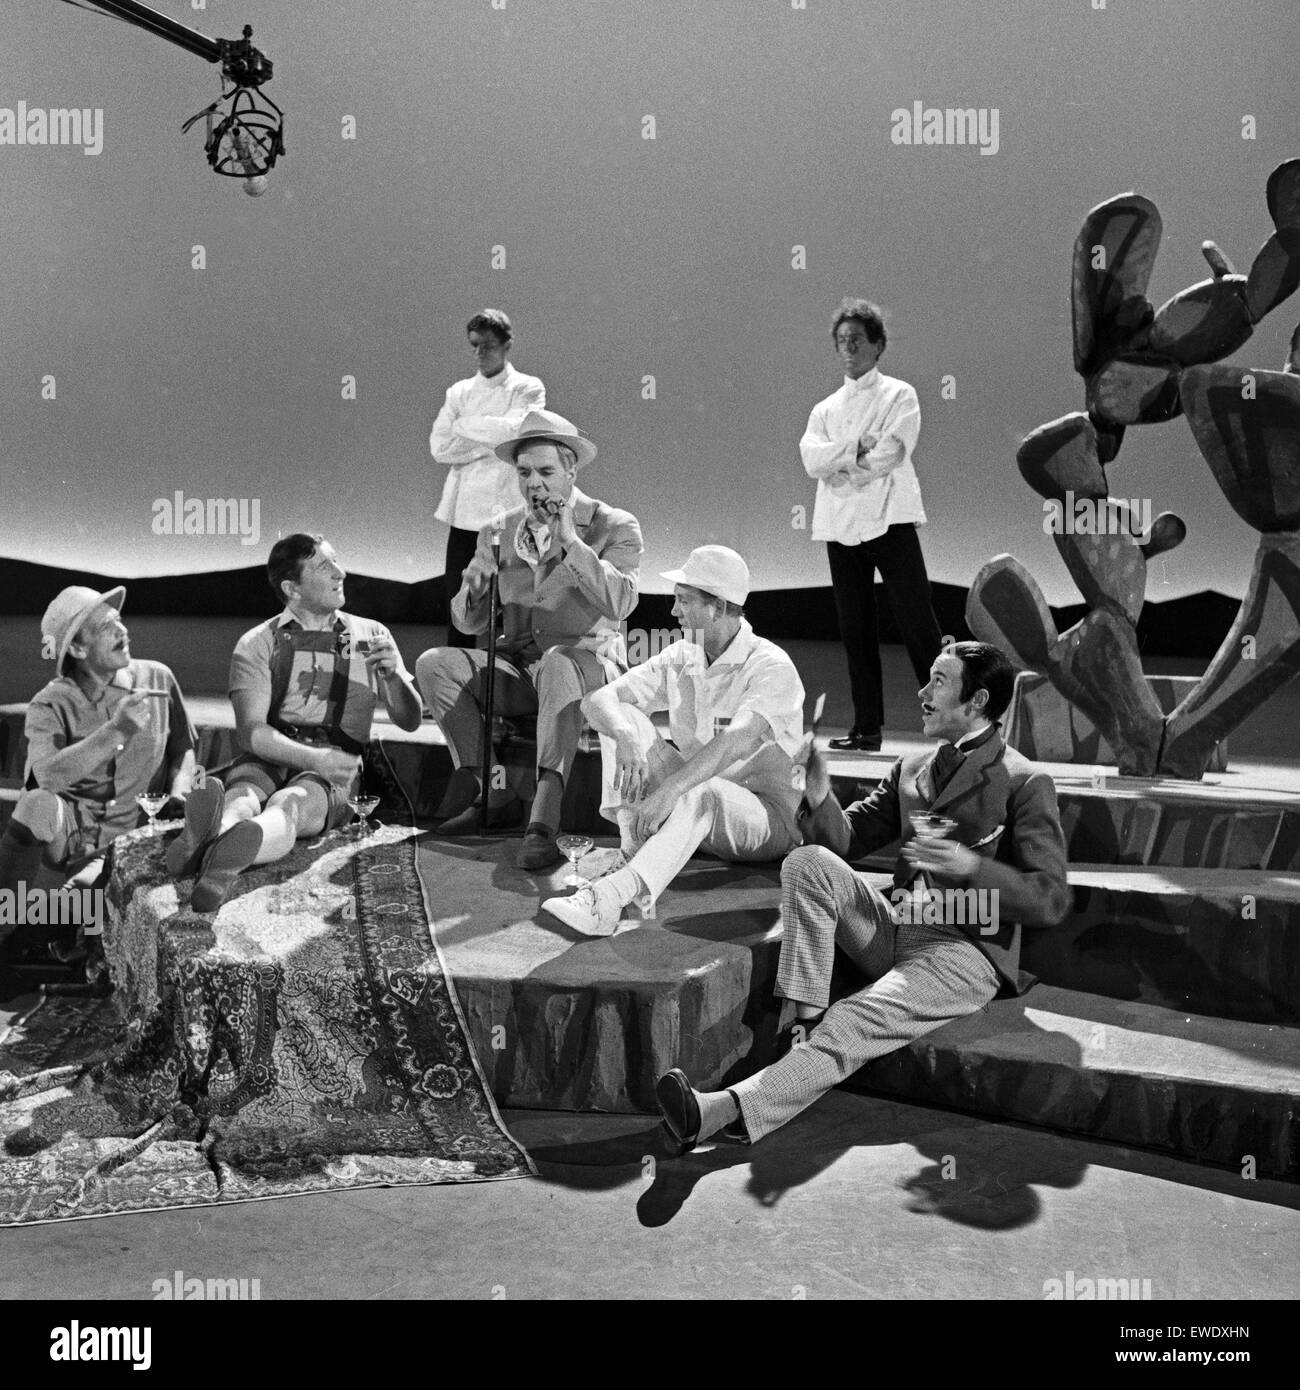 Norske Teatret probt für eine Vorstellung von 'Peer Gynt' am Deutschen Schauspielhaus de Hamburgo, Deutschland 1960er Jahre. Teatro noruego Norske Teatrer haciendo ensayos de 'Peer Gynt' en el Deutsches Schauspielhaus de Hamburgo, Alemania, 1960. Foto de stock